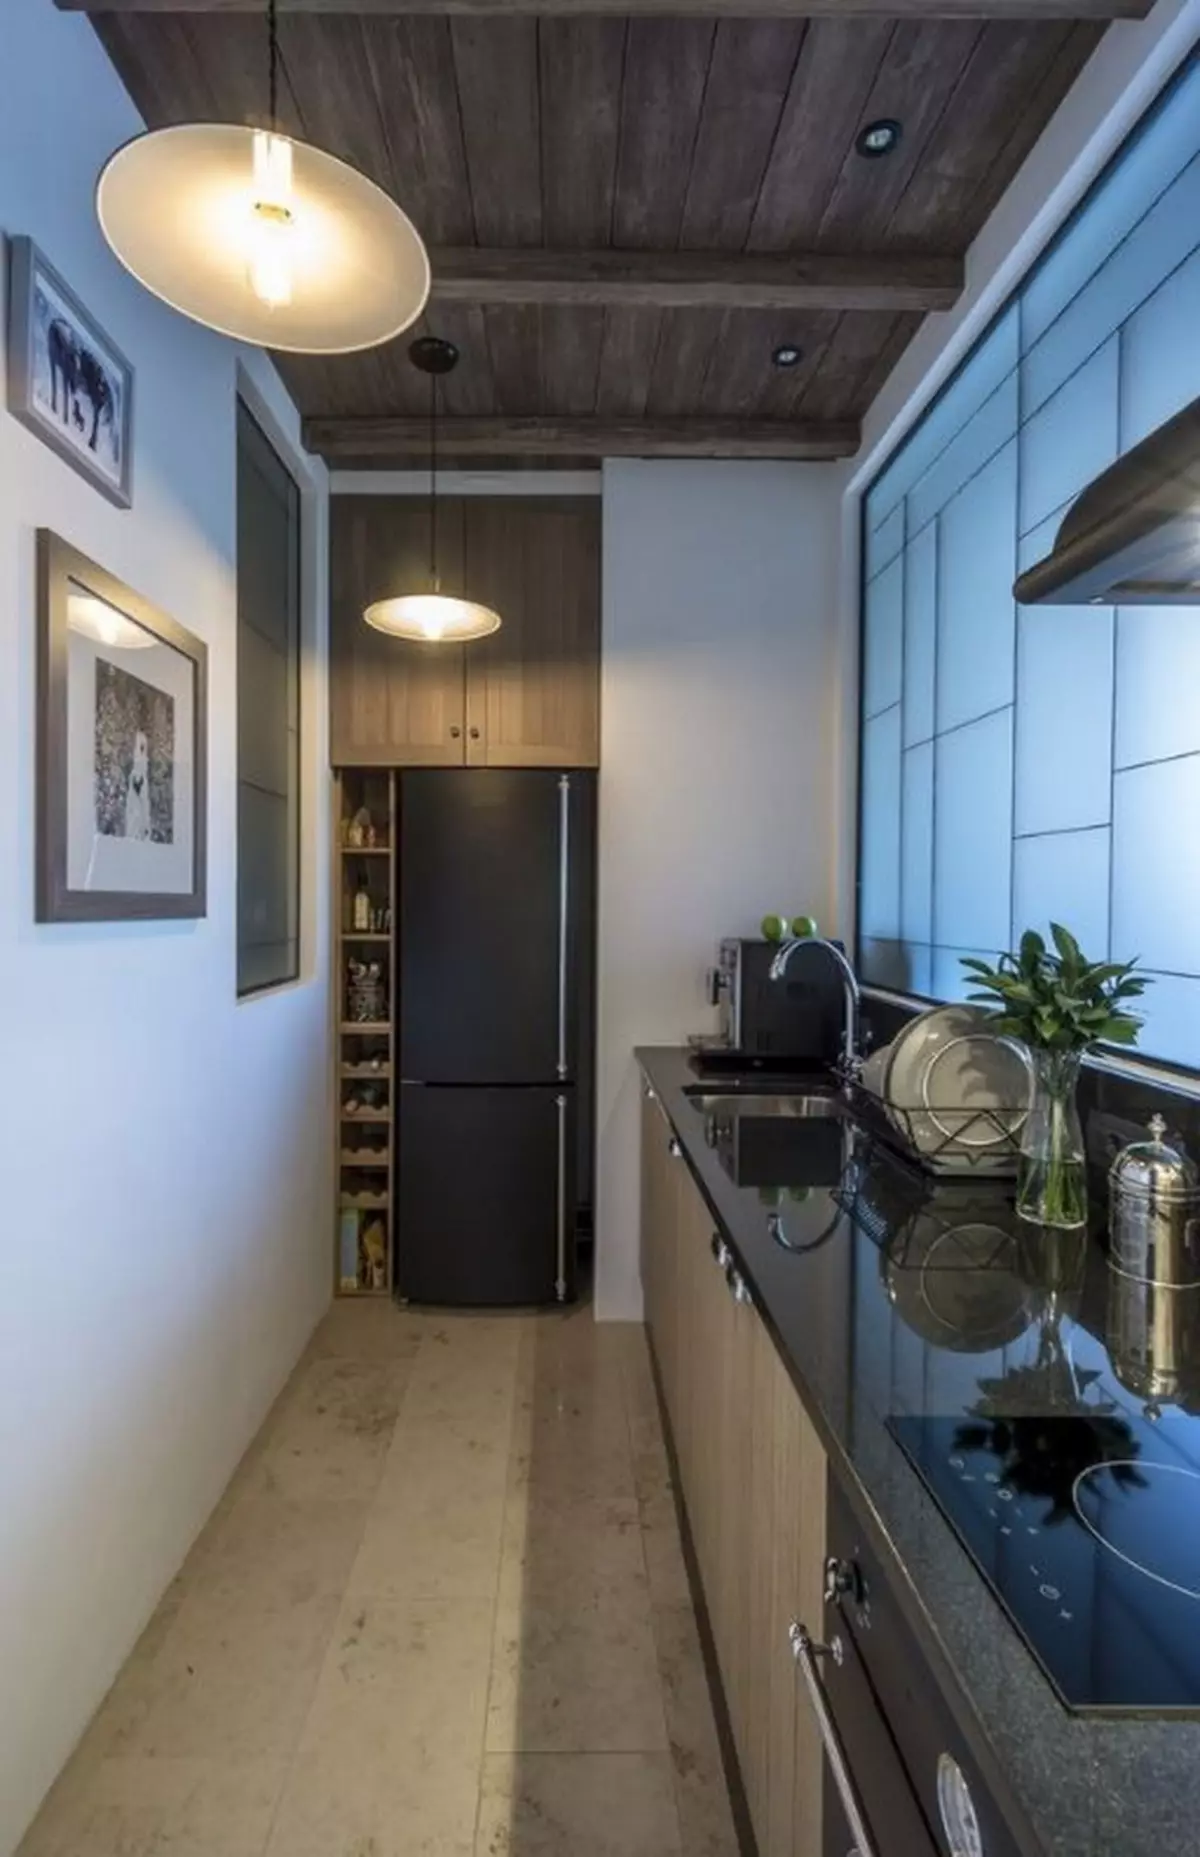 Virtuvės įėjimo salė (62 nuotraukos): virtuvės išdėstymas kartu su koridoriumi privačiame name ir bute. Interjero dizaino virtuvės salės viename stiliuje 9487_49